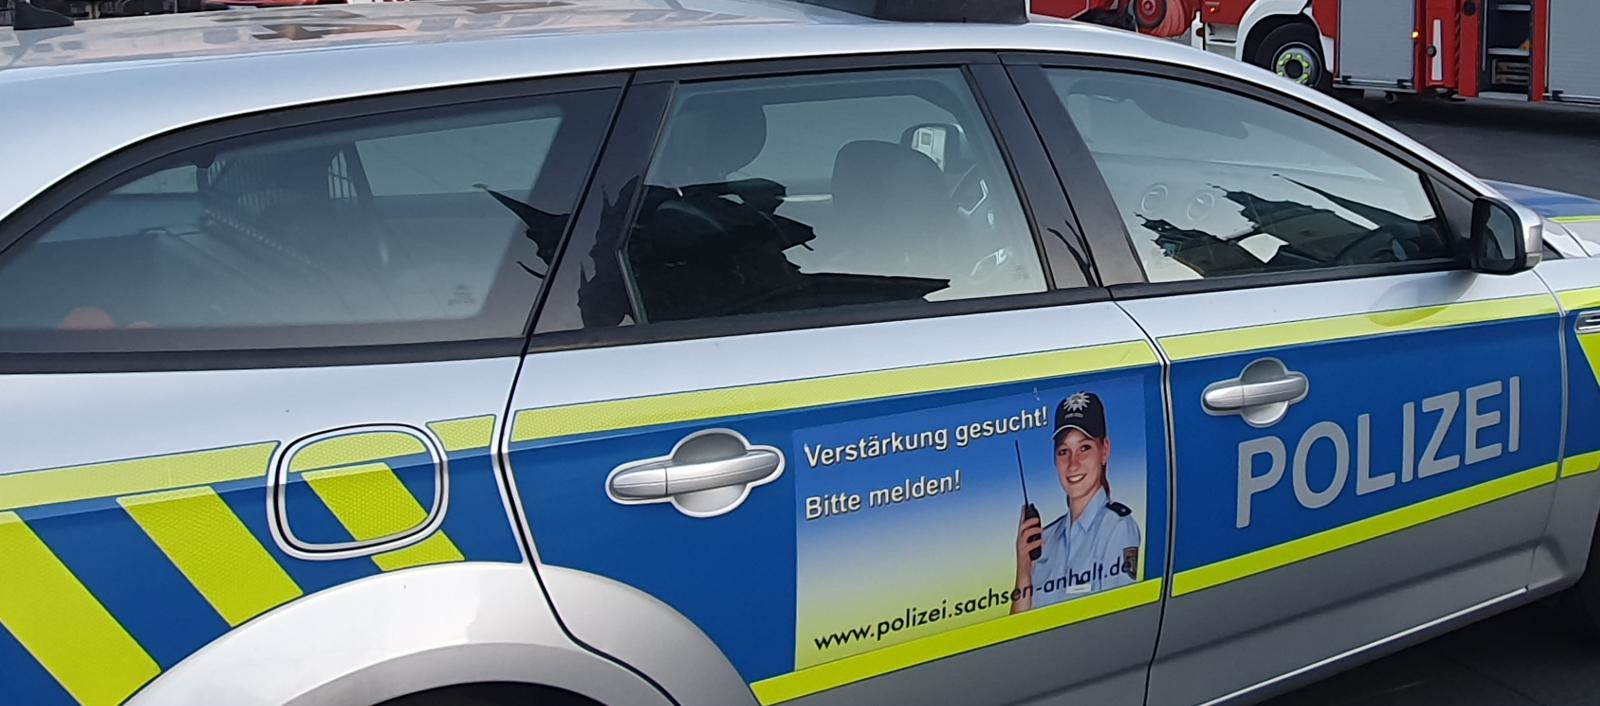 ICE von Berlin nach Stendal: Keine Fahrkarte, dafür offener Haftbefehl: Gesuchter 22-Jähriger versteckt sich auf Zugtoilette